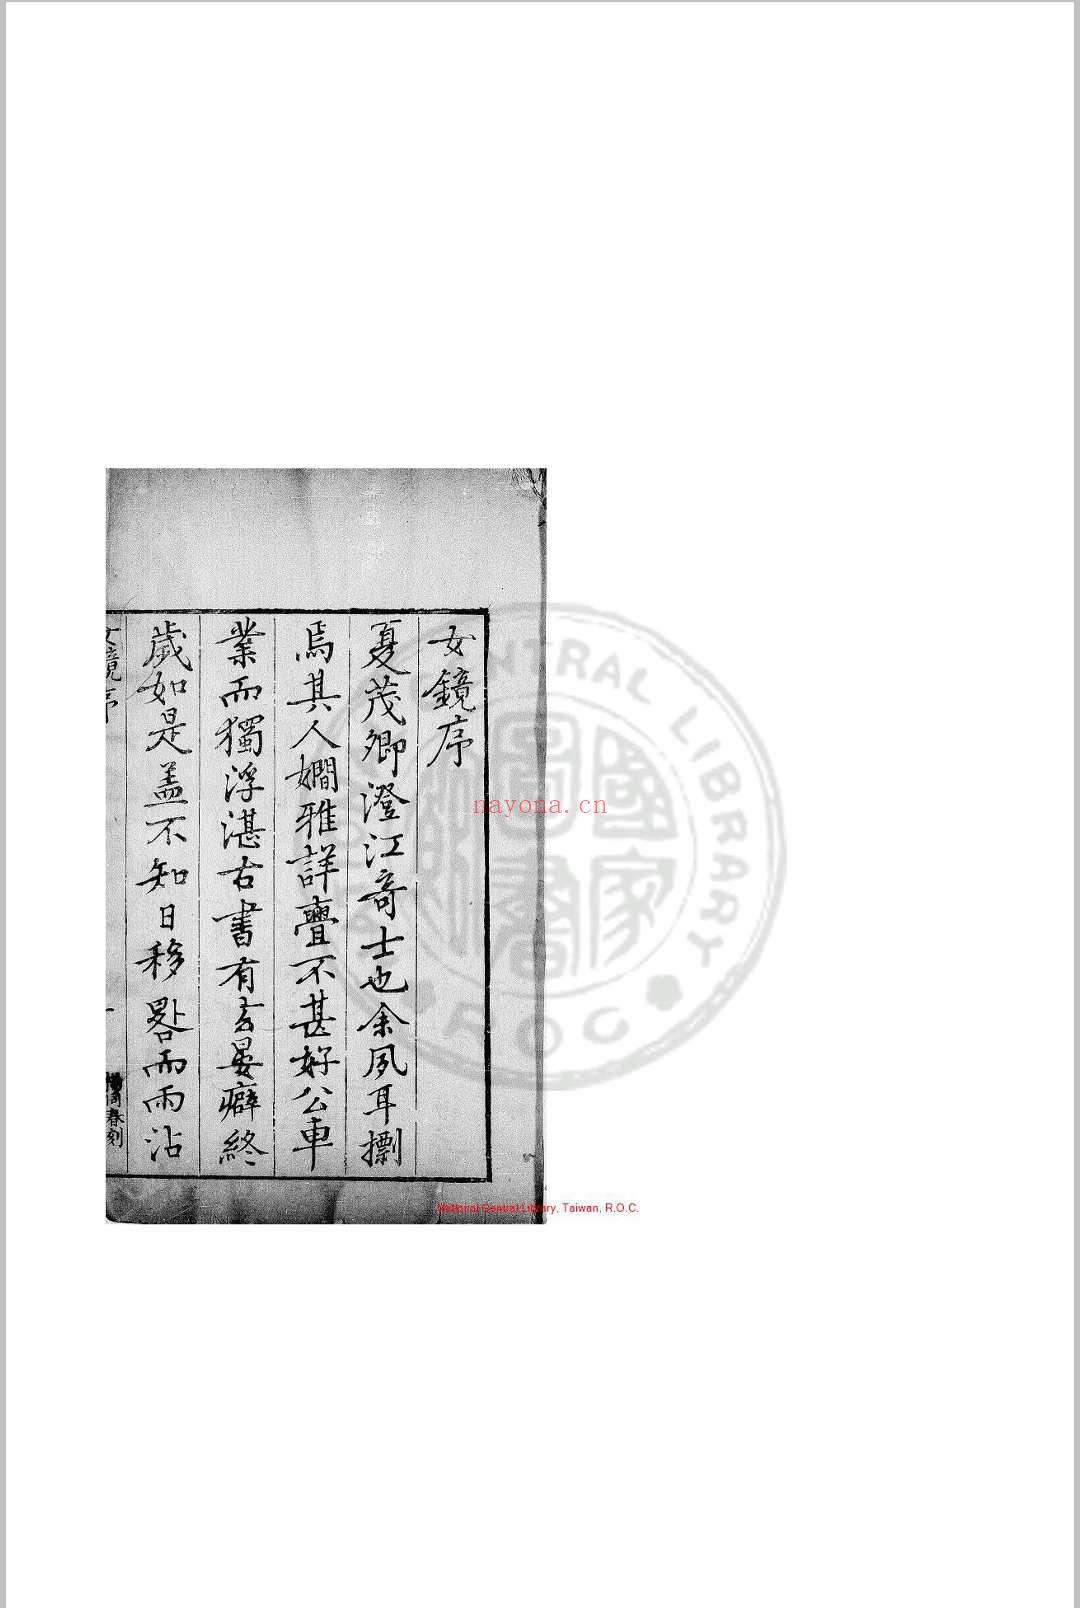 女镜 夏树芳 明万历间(1573-1620)原刊本